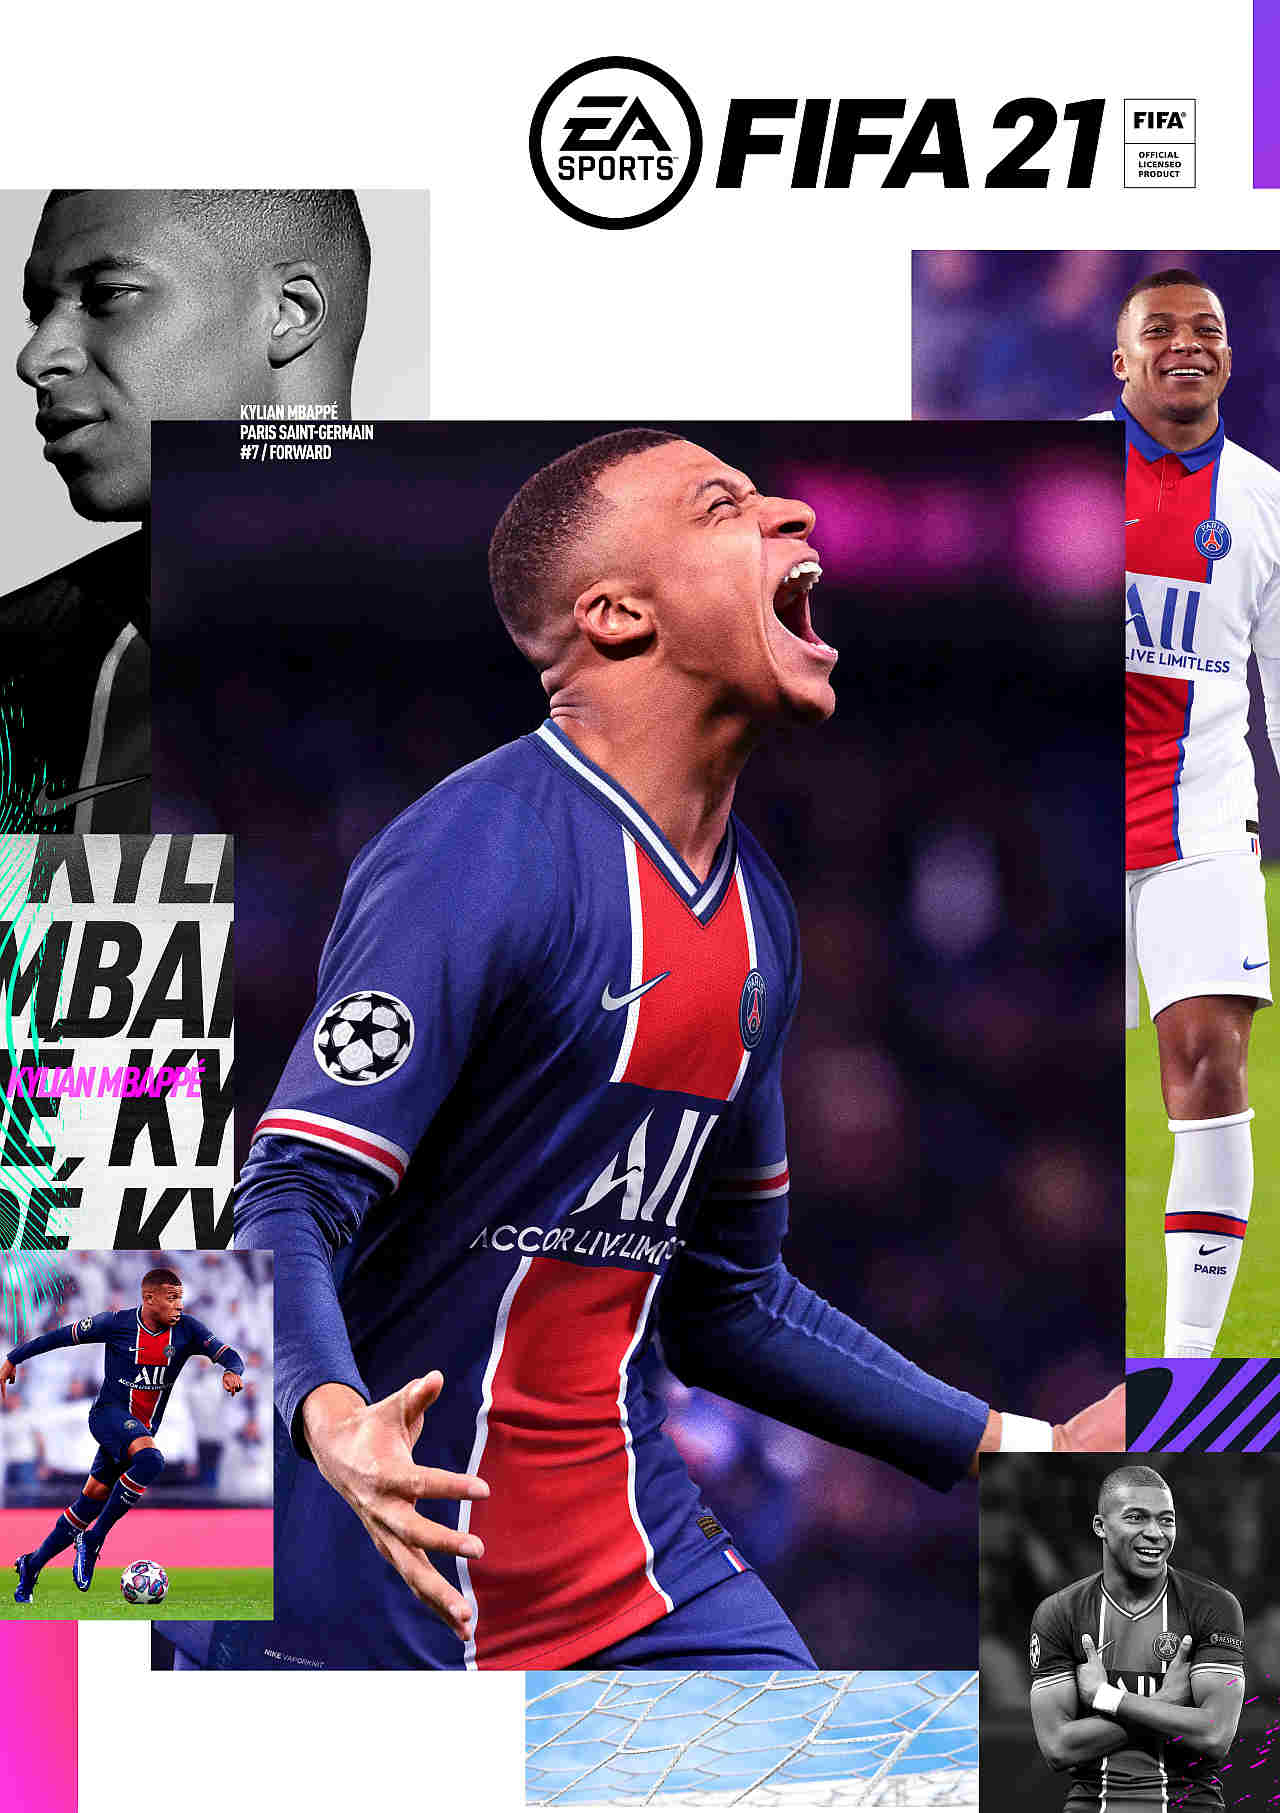 Wer schafft es auf das FIFA 22 Cover? Das sind die Kandidaten